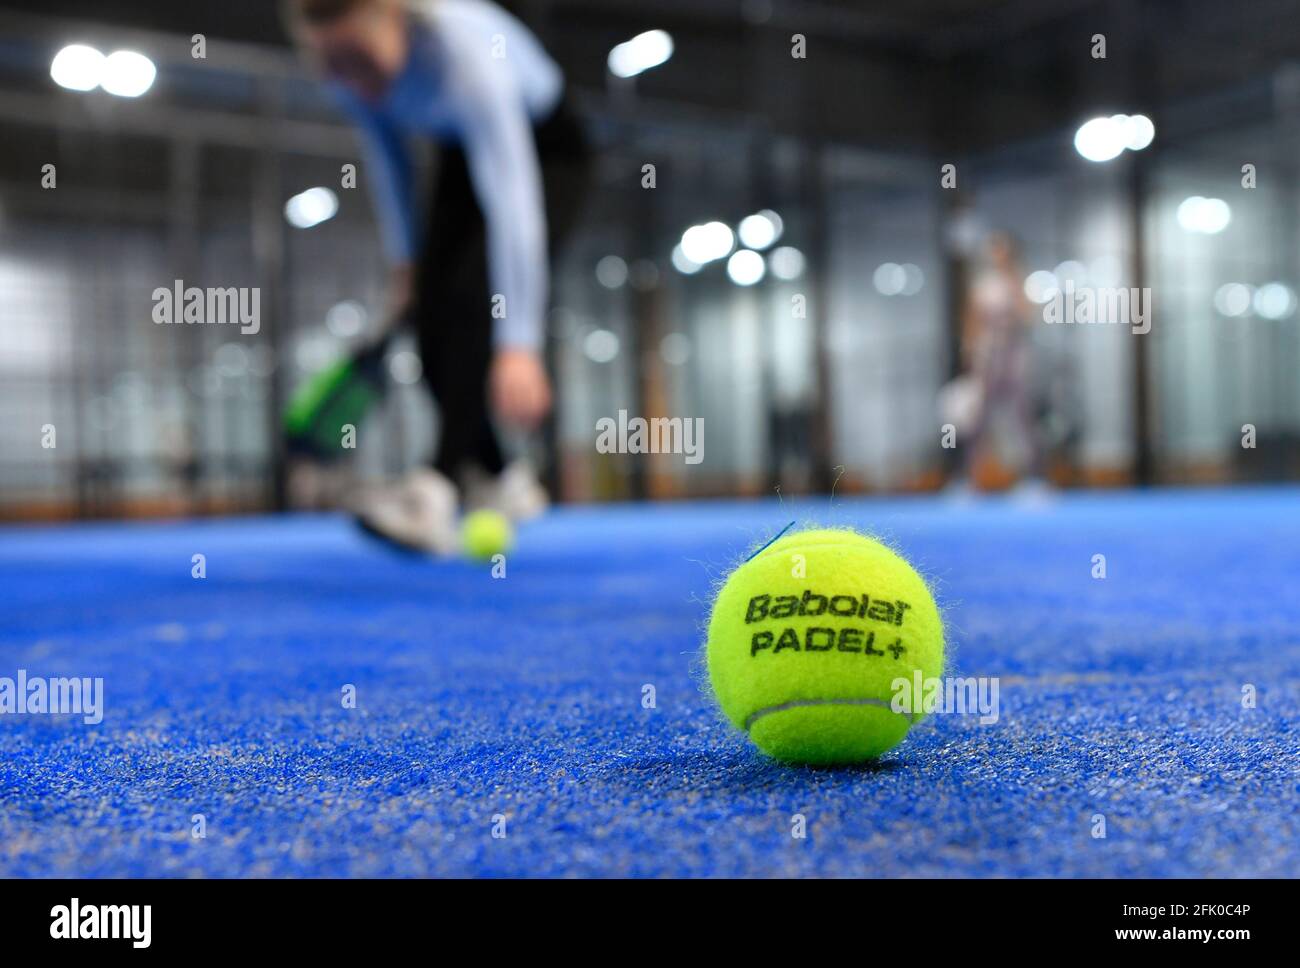 Le Padel est un sport de raquette qui combine les éléments du tennis, du  squash et du badminton. Le padel est le sport qui connaît la croissance la plus  rapide au monde.